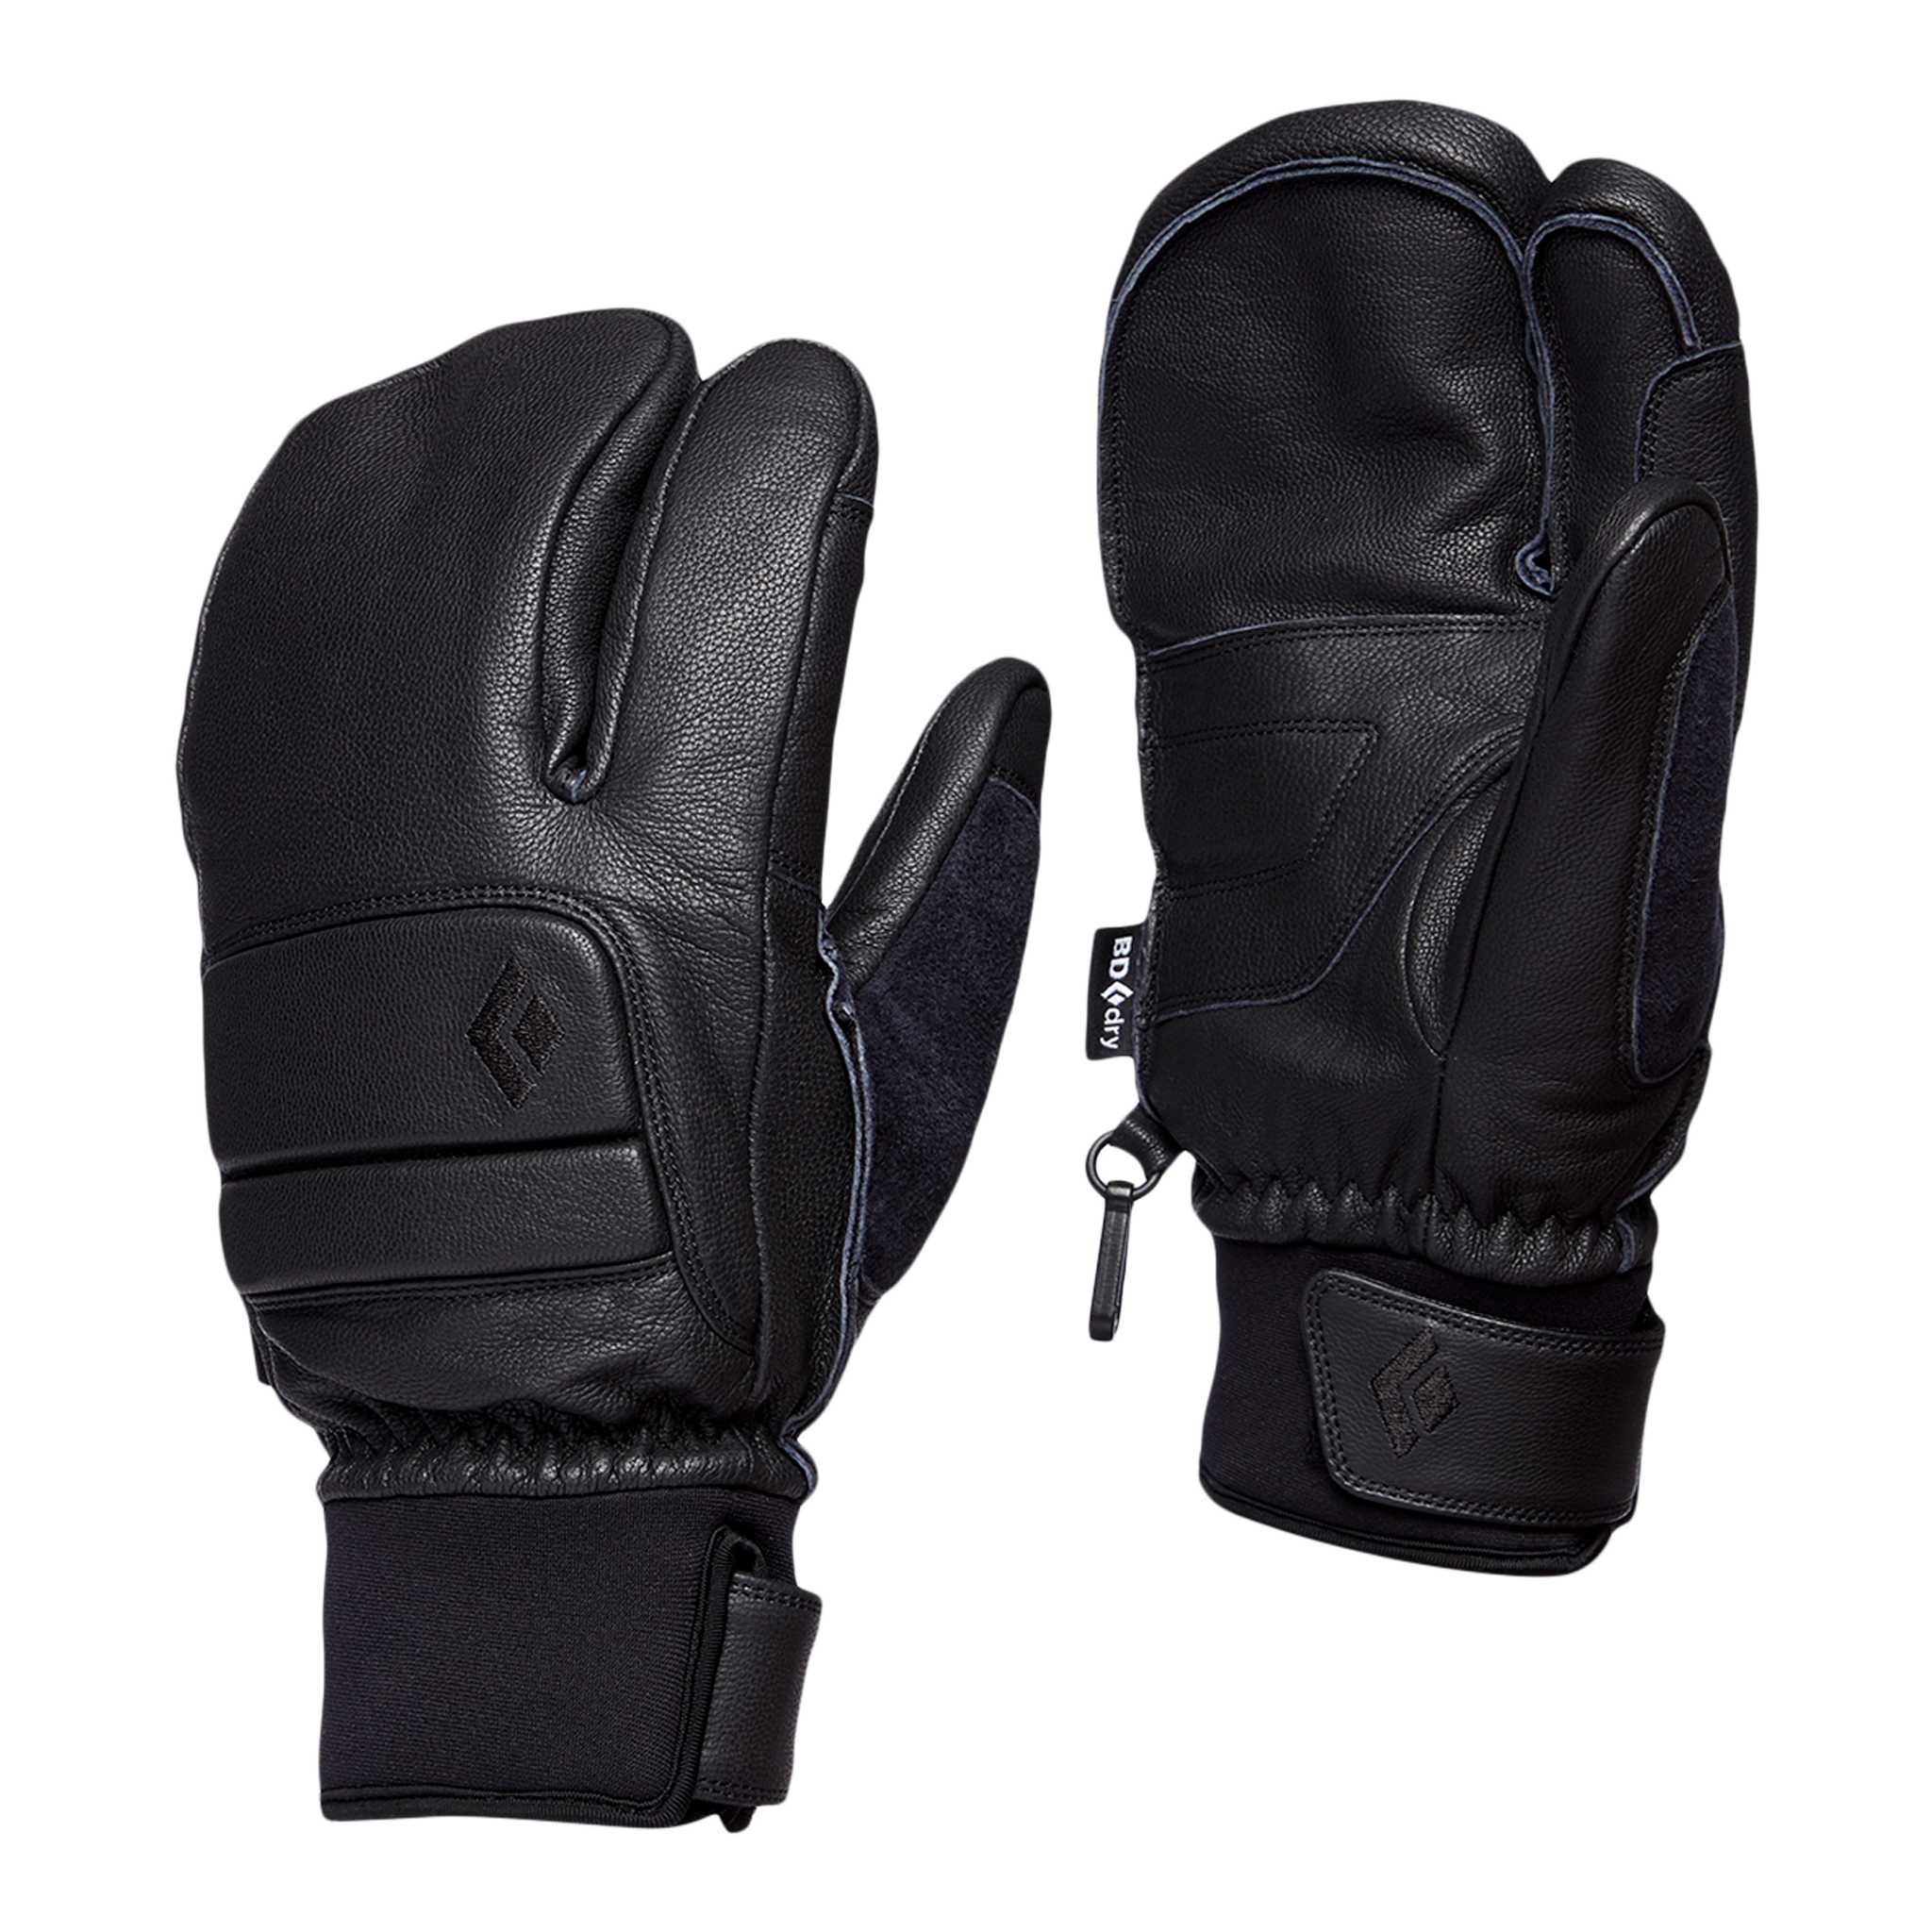 Black Diamond Equipment Men's Spark Finger Gloves , Large Smoke